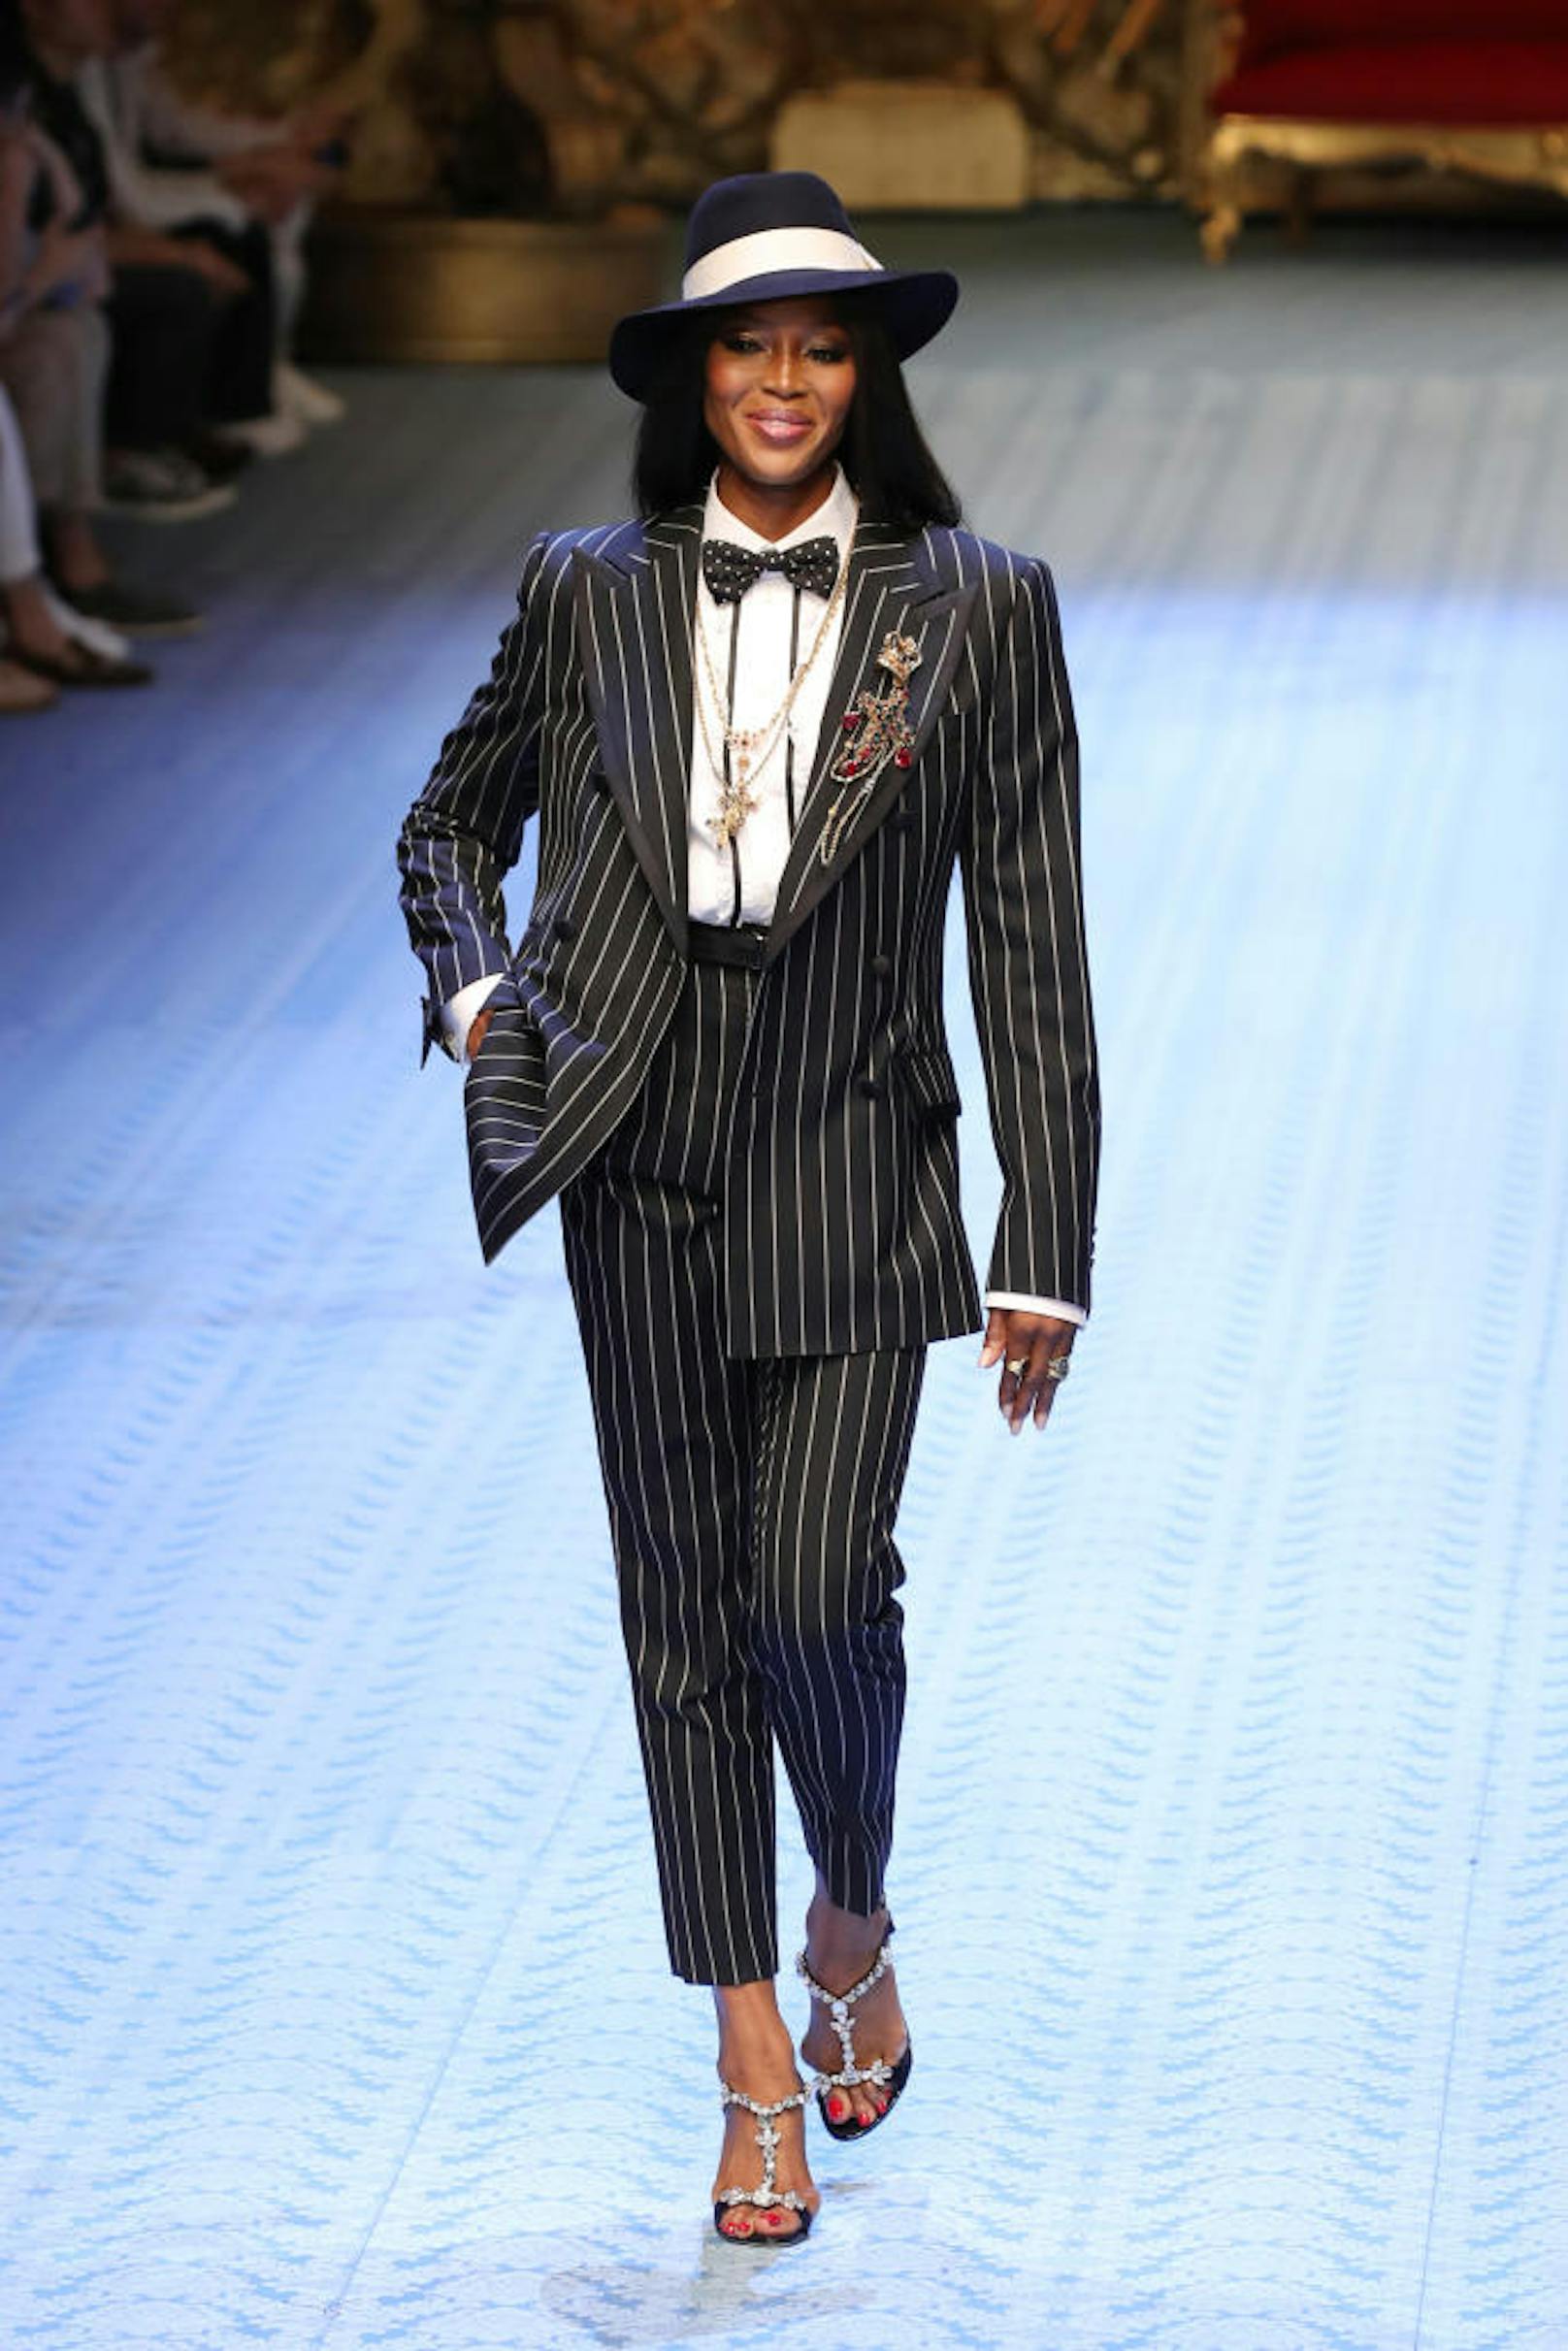 Naomi Campbell, Supermodel aus den 90ern schlüpfte erst vor kurzem wieder in einen Suit von Dolce & Gabbana und ließ sich am Catwalk blicken. Ein seltenes Ereignis während der Men's Fashion Week in Mailand.